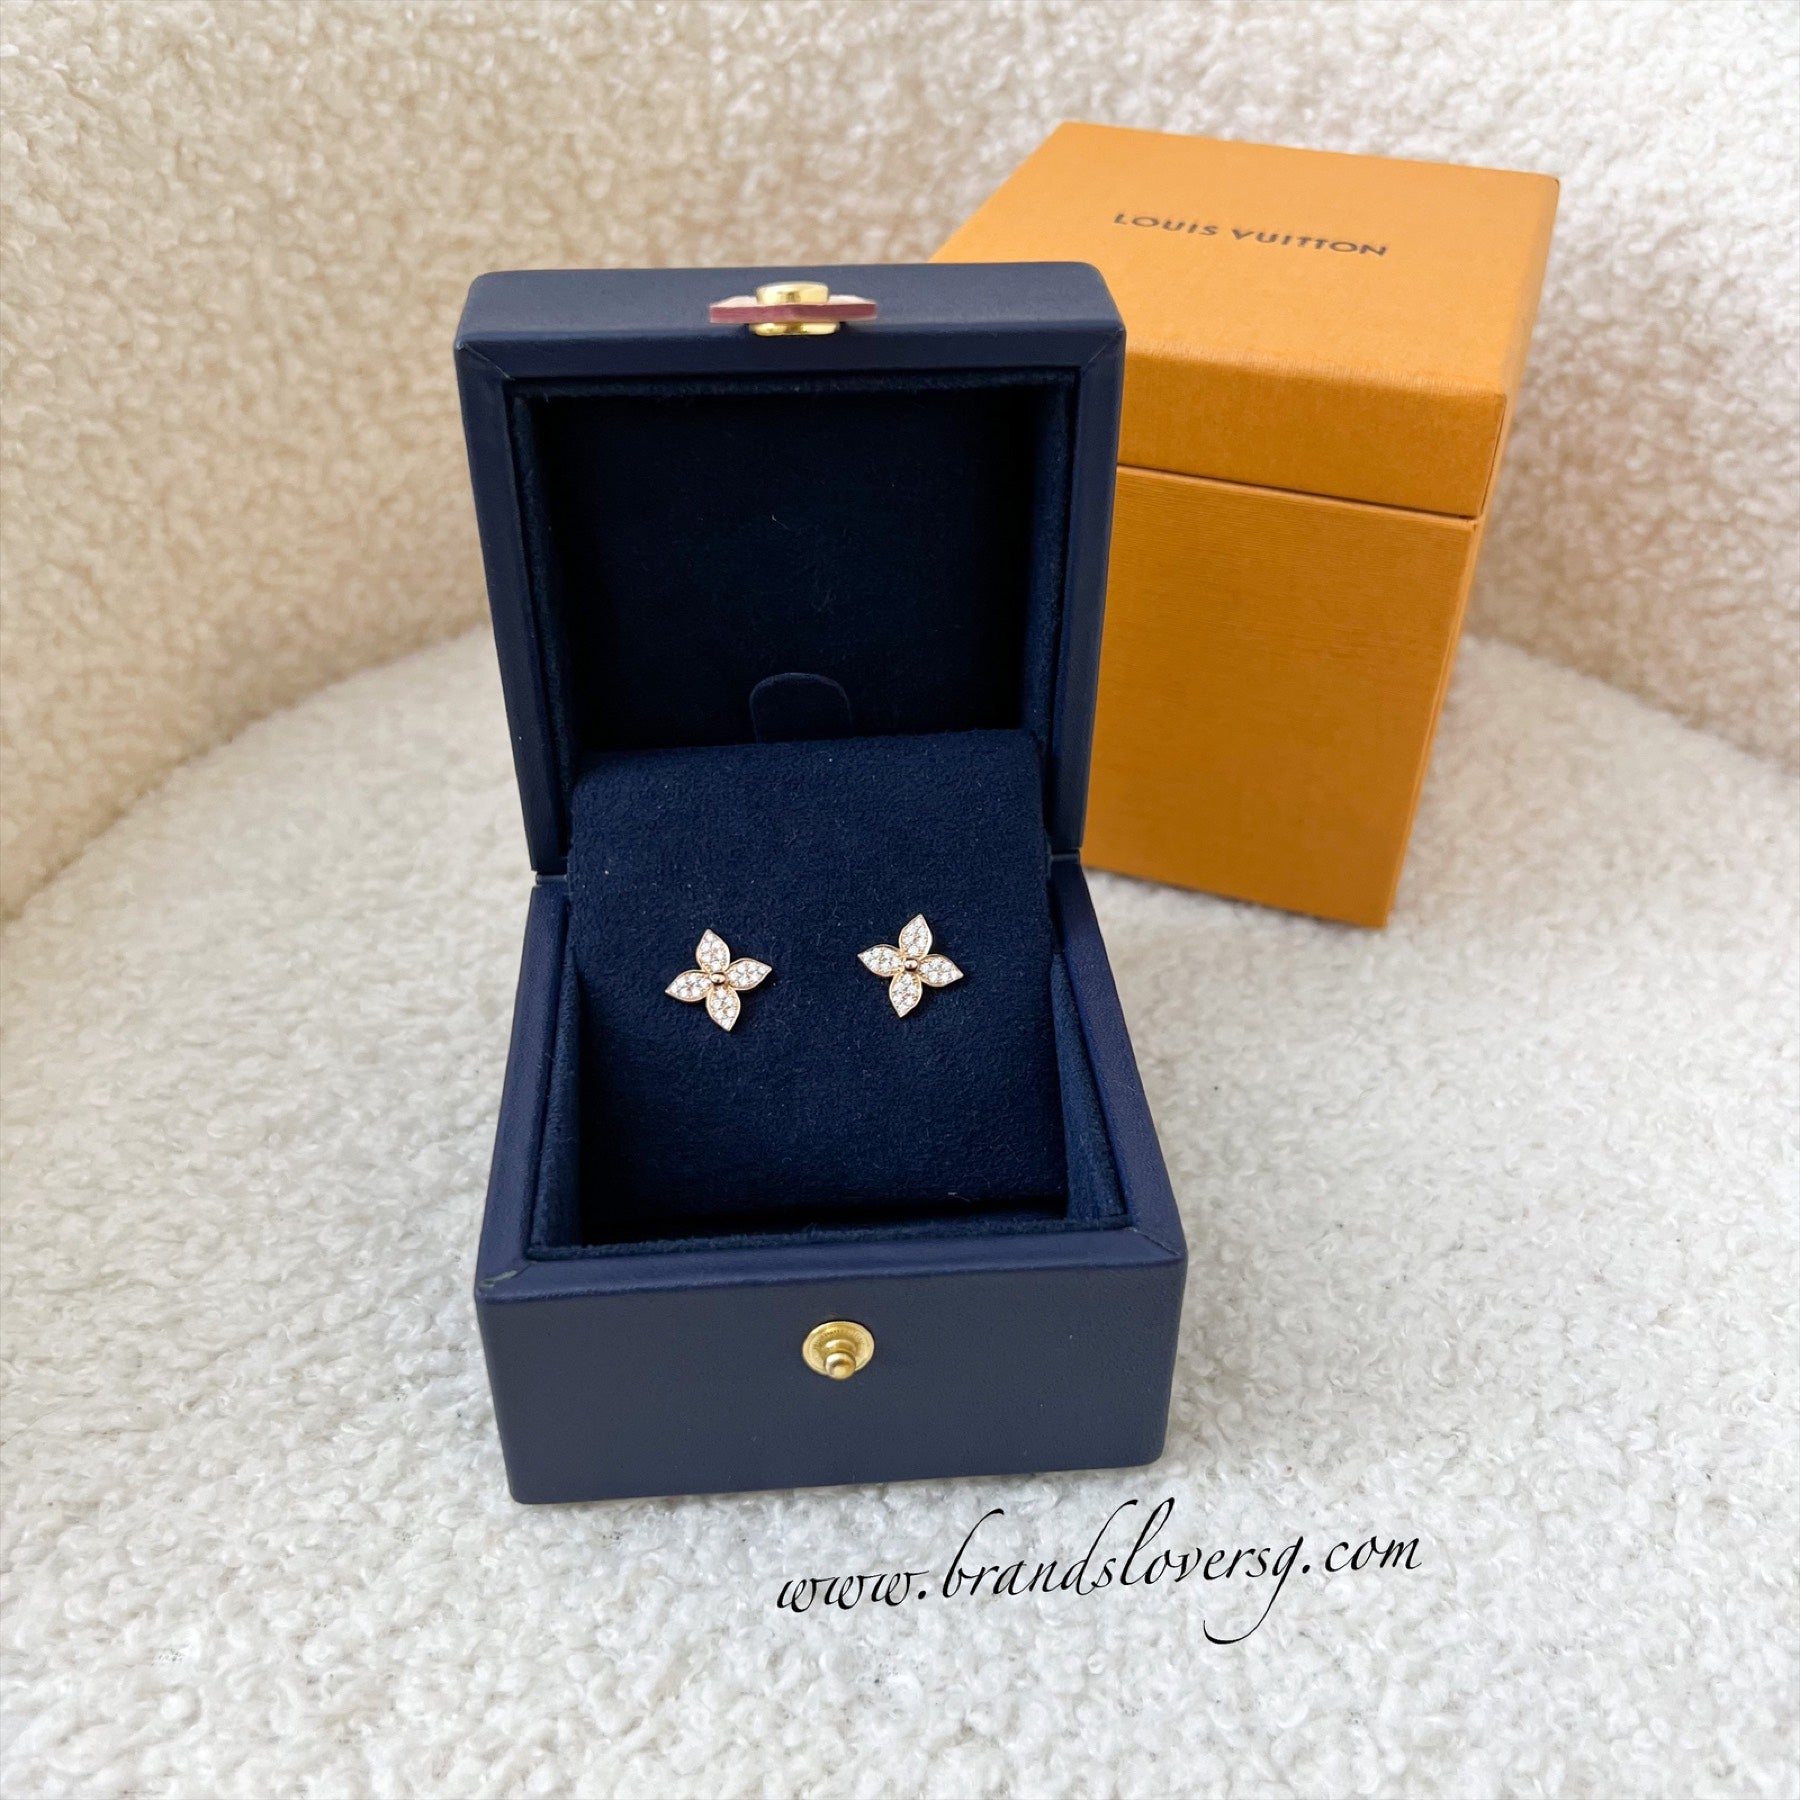 vuitton star blossom earrings